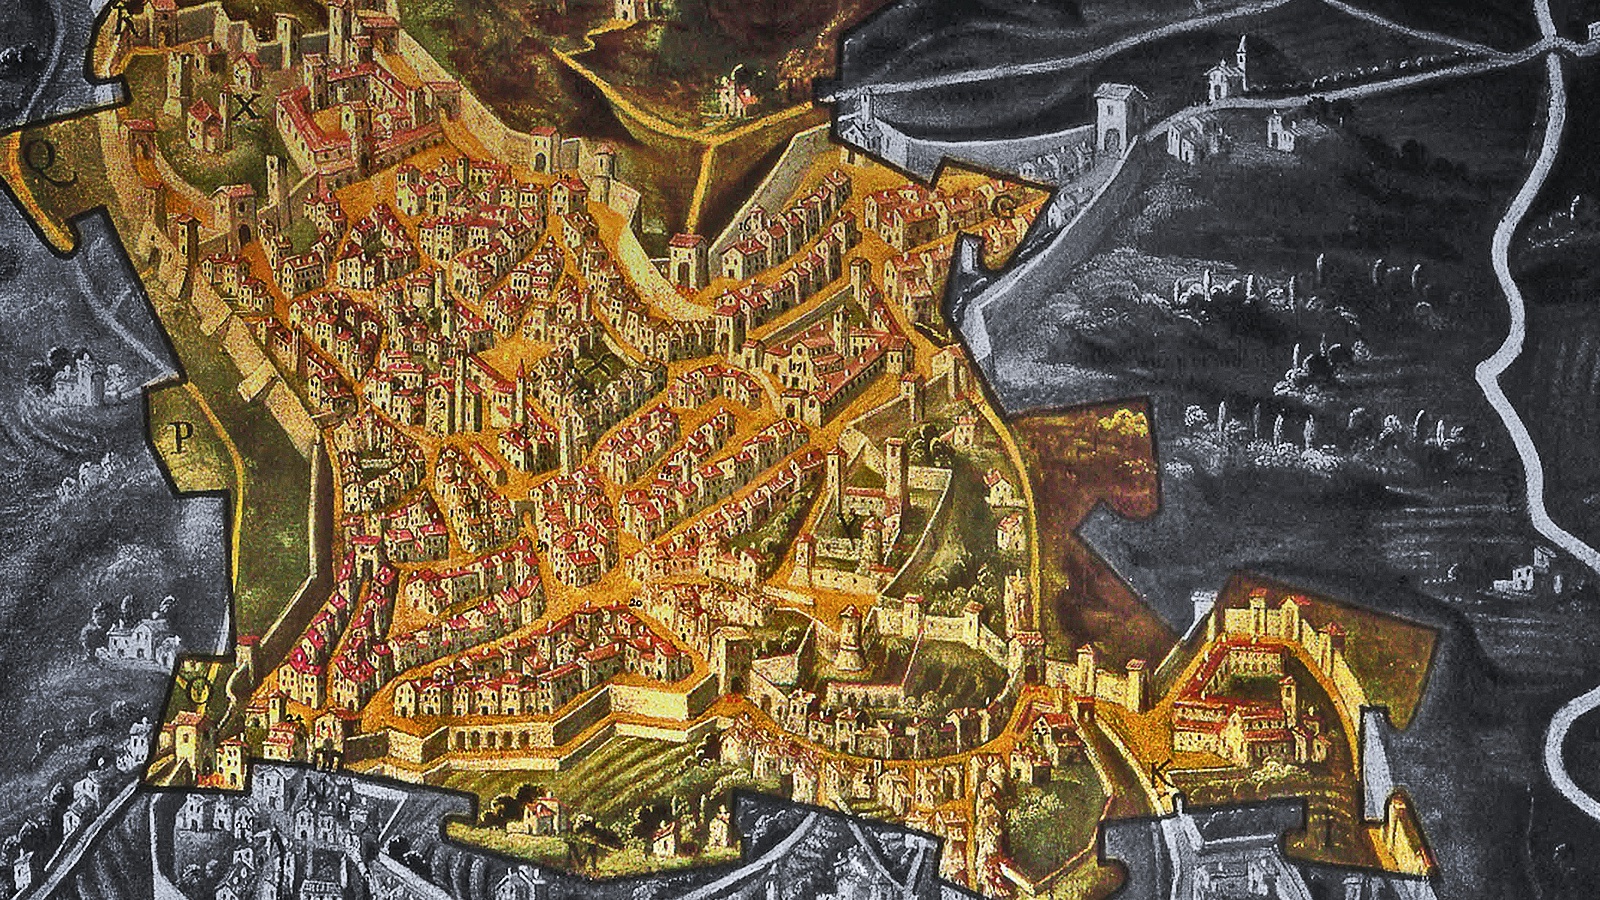 Le mura di Bergamo, la recensione: tre anni dopo l’inizio della pandemia, la giusta distanza